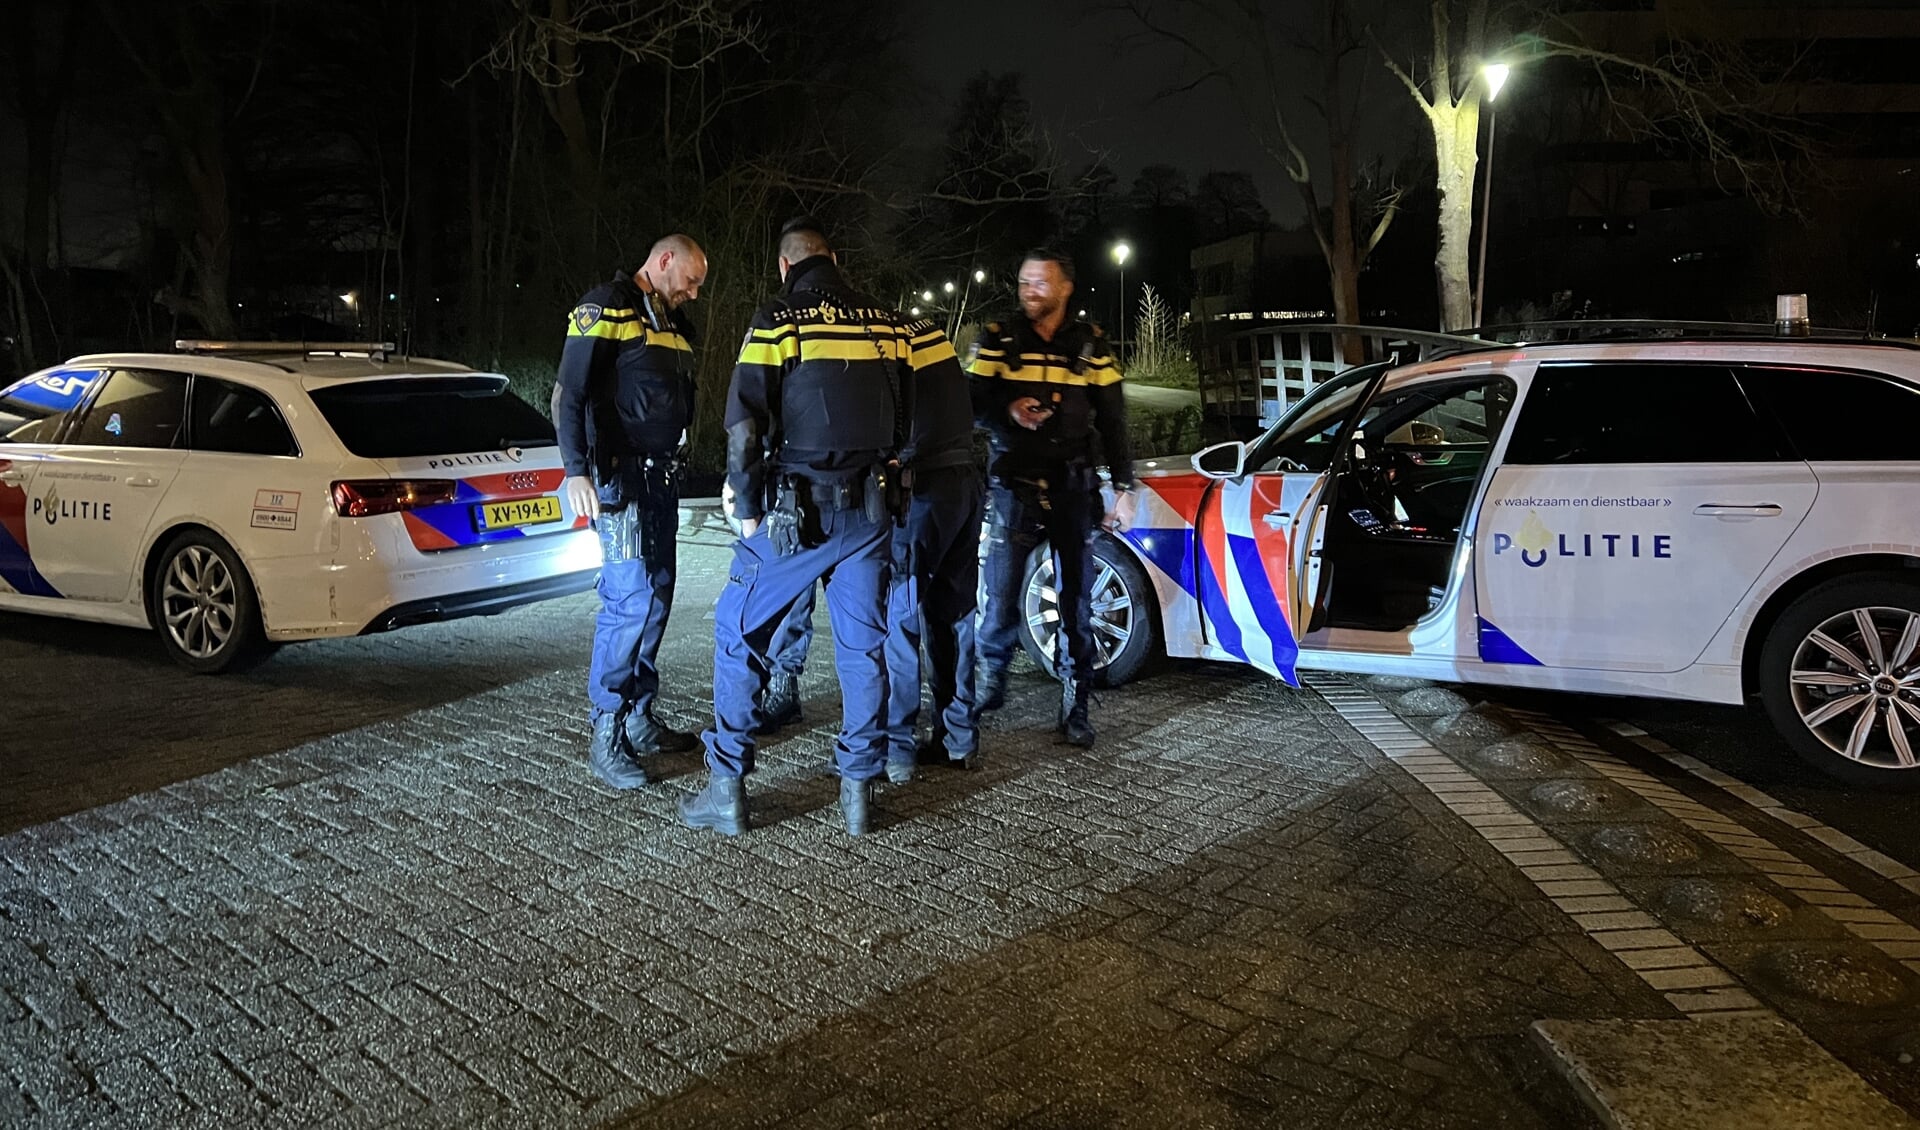 Vannacht vond een achtervolging plaats waar een politiewagen aan de Reeuwijkse Randweg in Reeuwijk beschadigd raakte. De achtervolging die is uiteindelijk in Gouda geëindigd. 